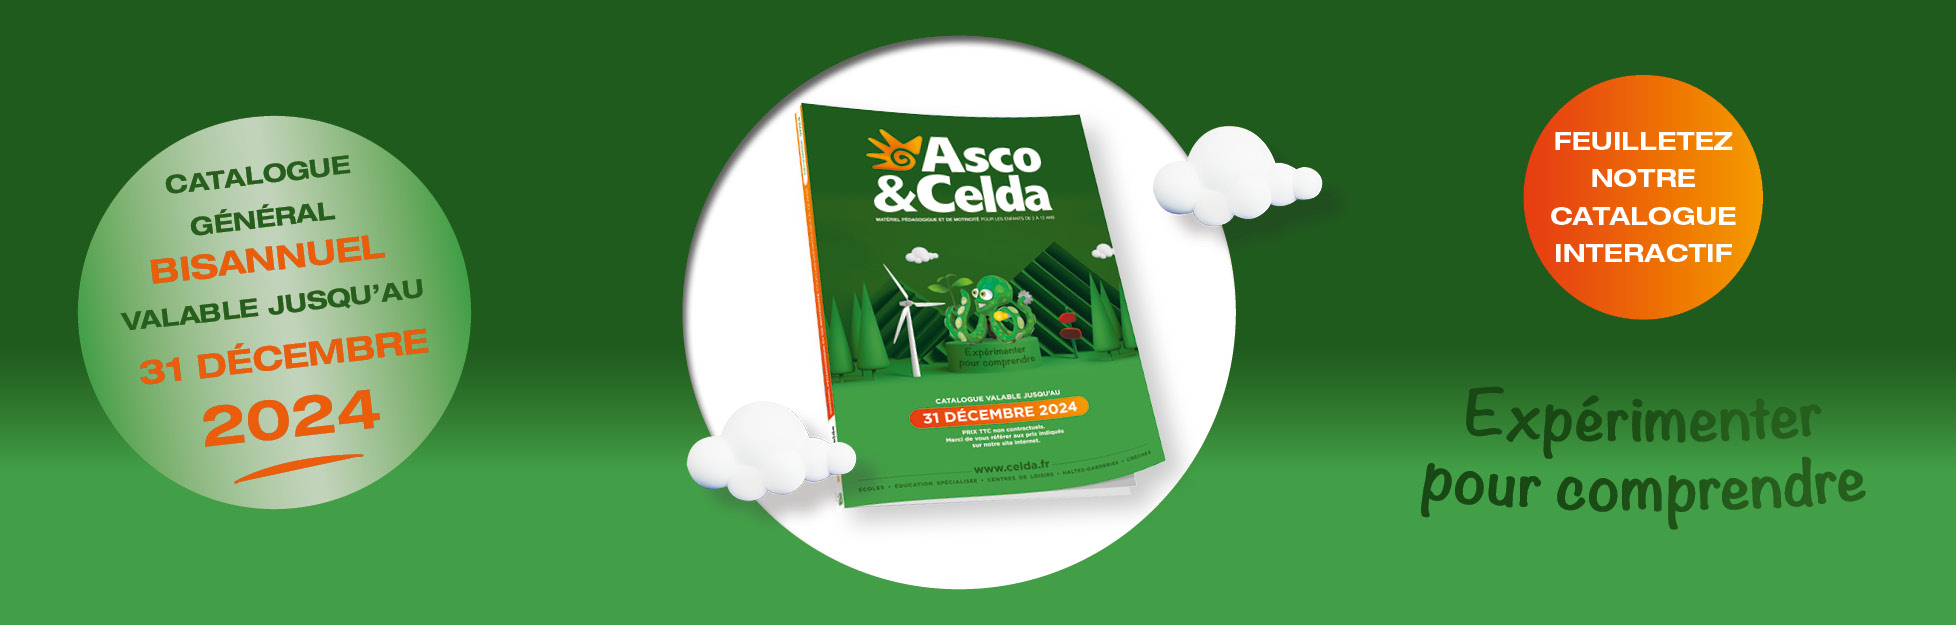 Asco et Celda catalogue 2023/2024